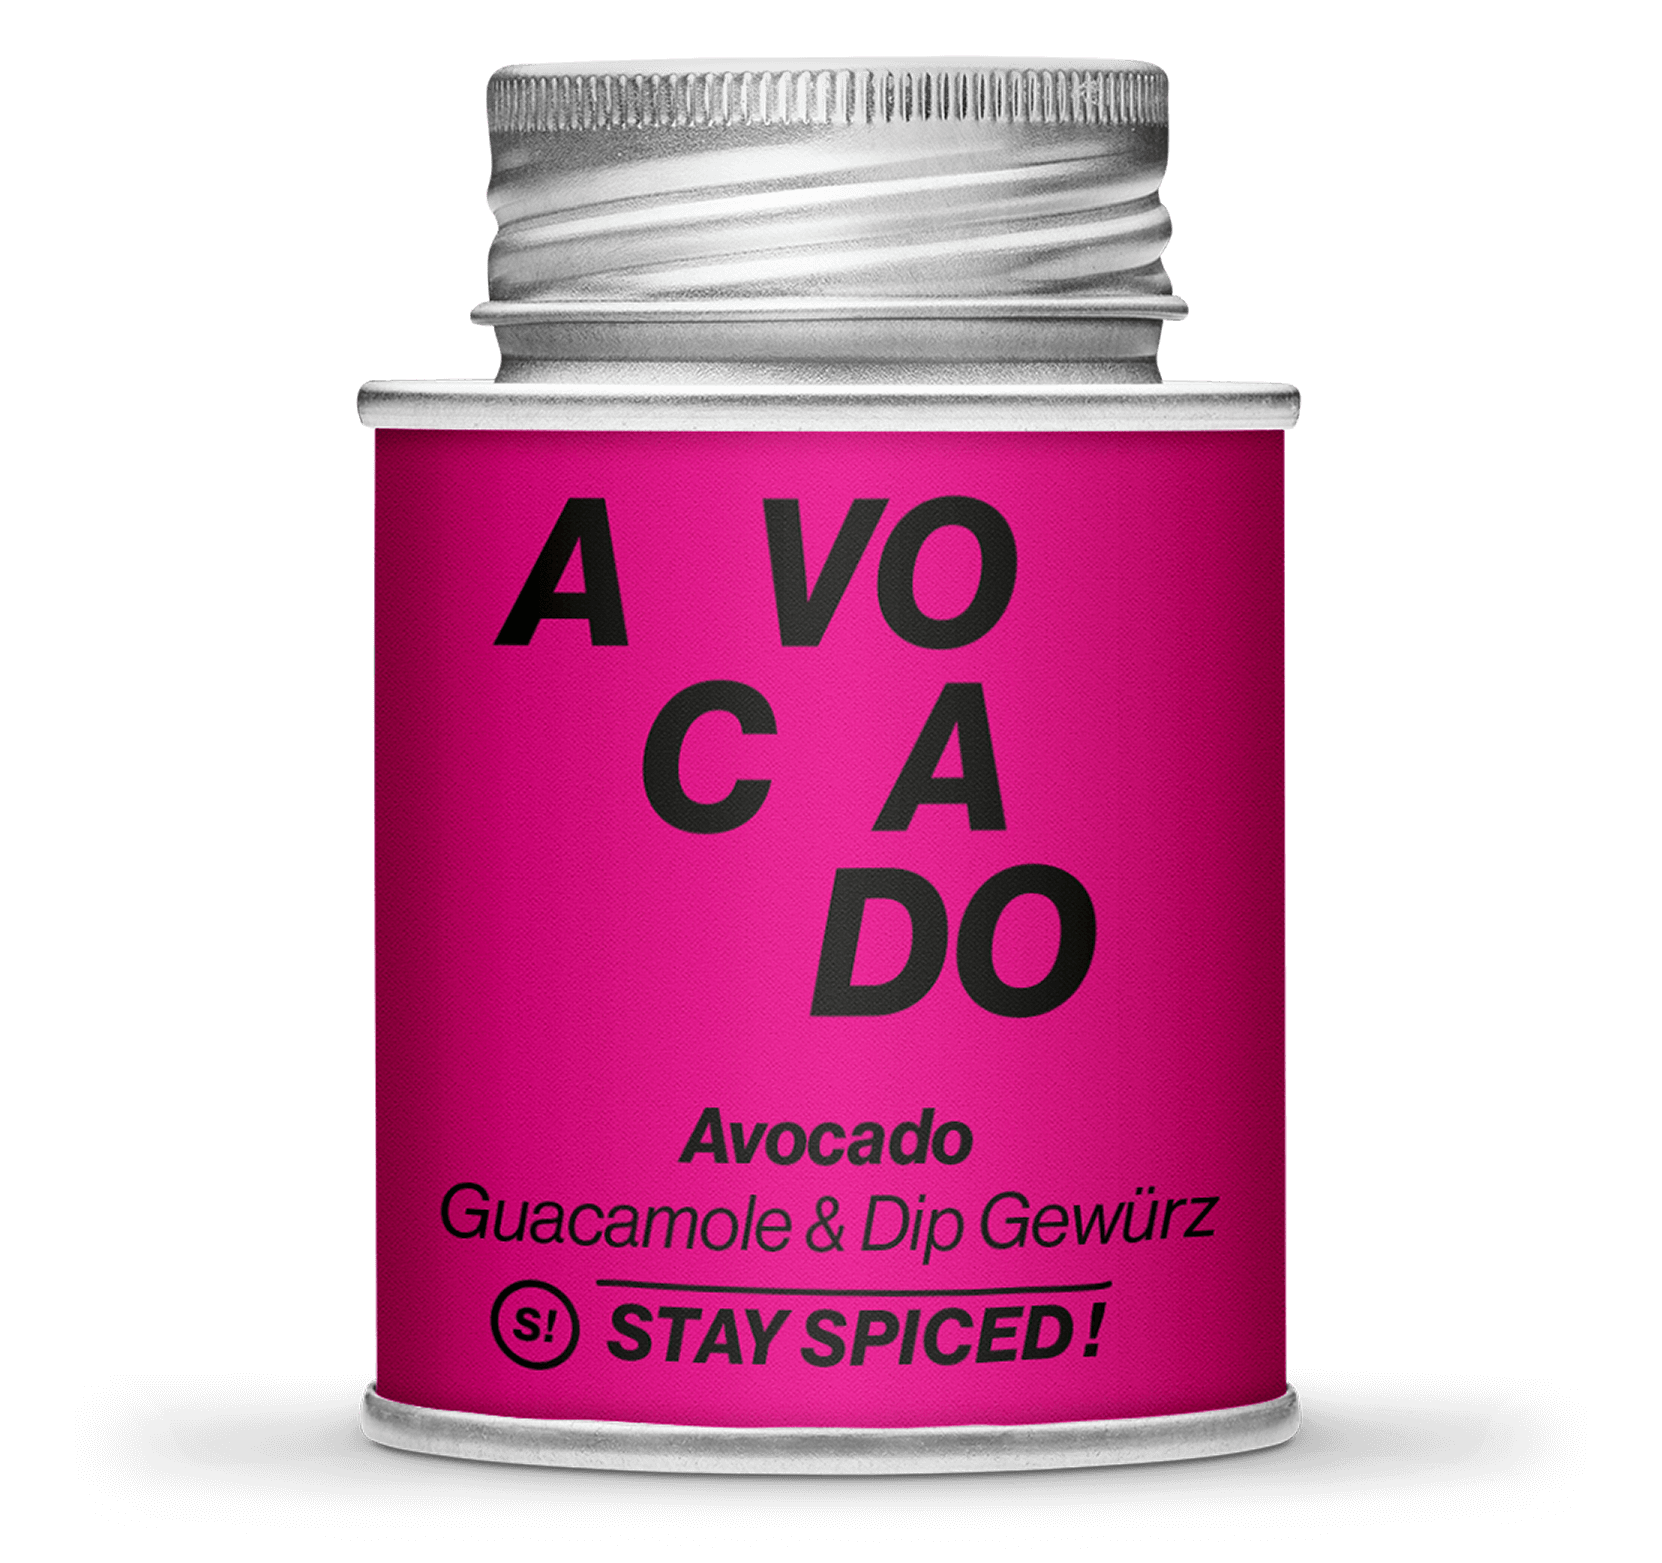 Avocado - Guacamole & Dip Gewürz